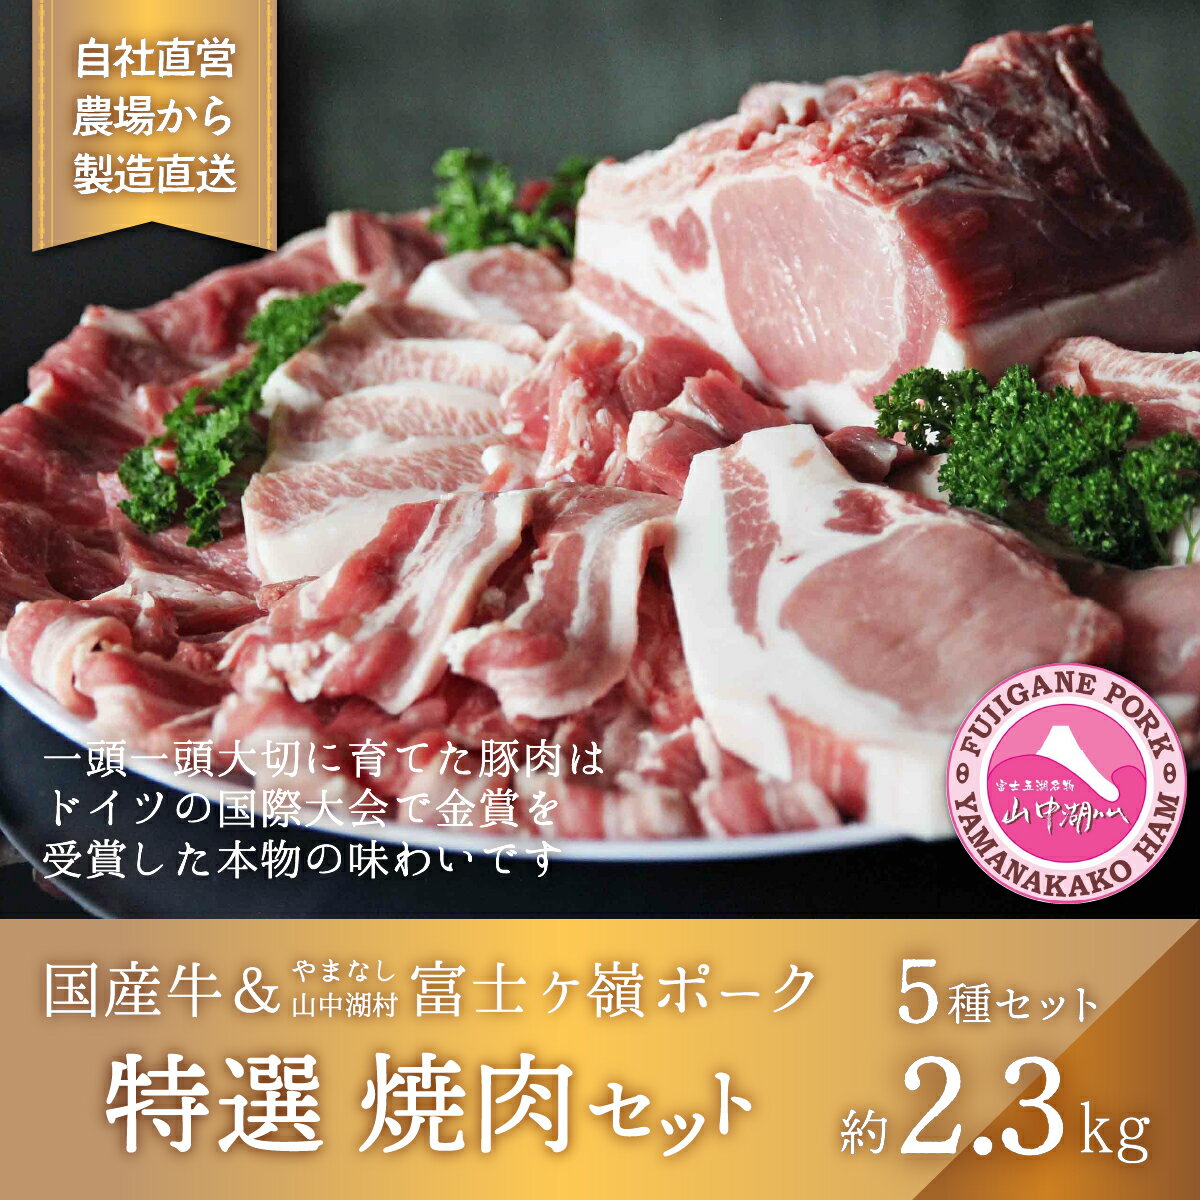 【ふるさと納税】【特選】国産牛・富士ヶ嶺豚の焼肉セット